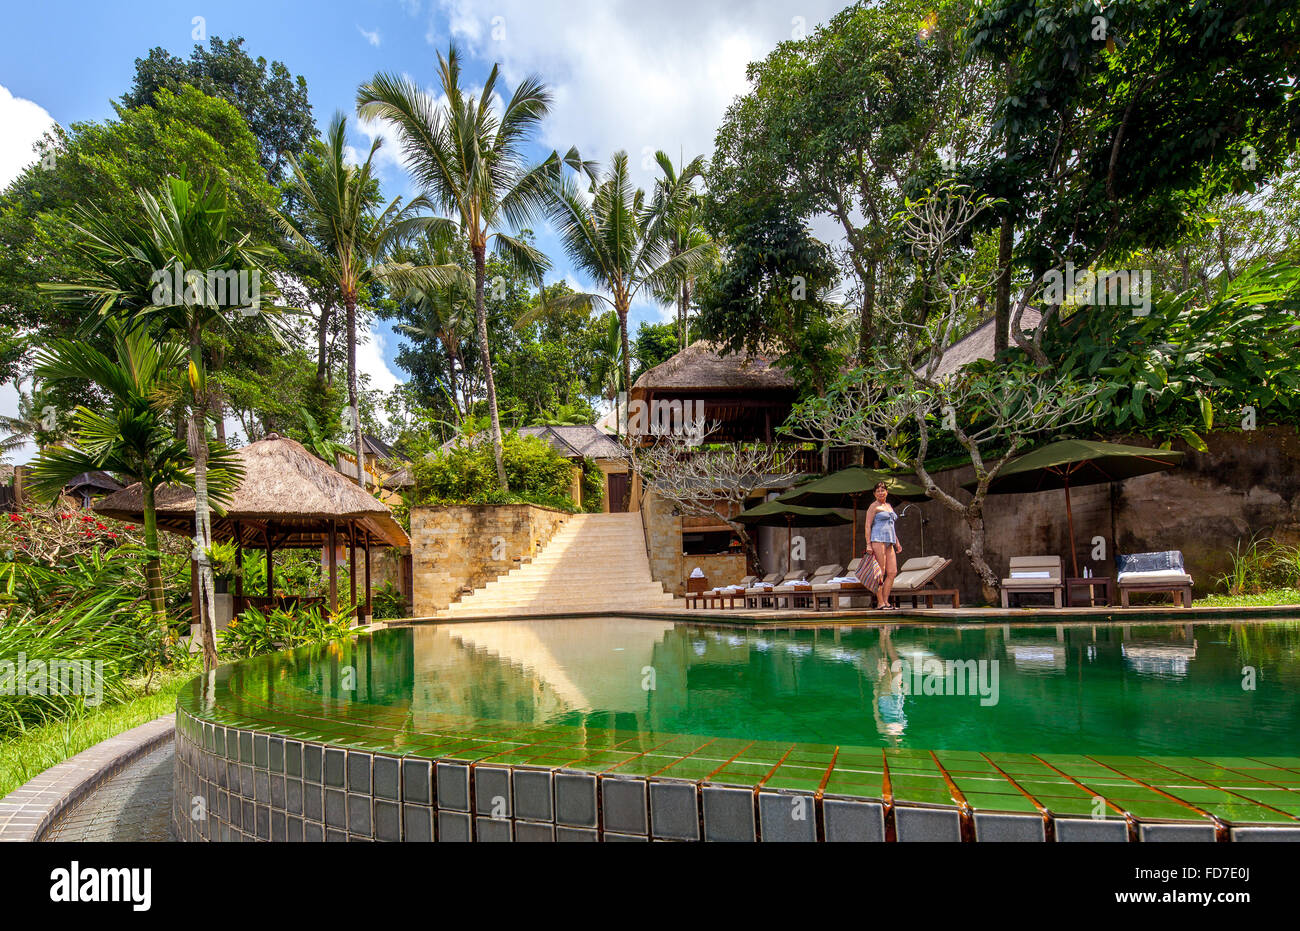 Hotel con piscina y palmeras, Ubud, Bali, Indonesia, Asia Foto de stock